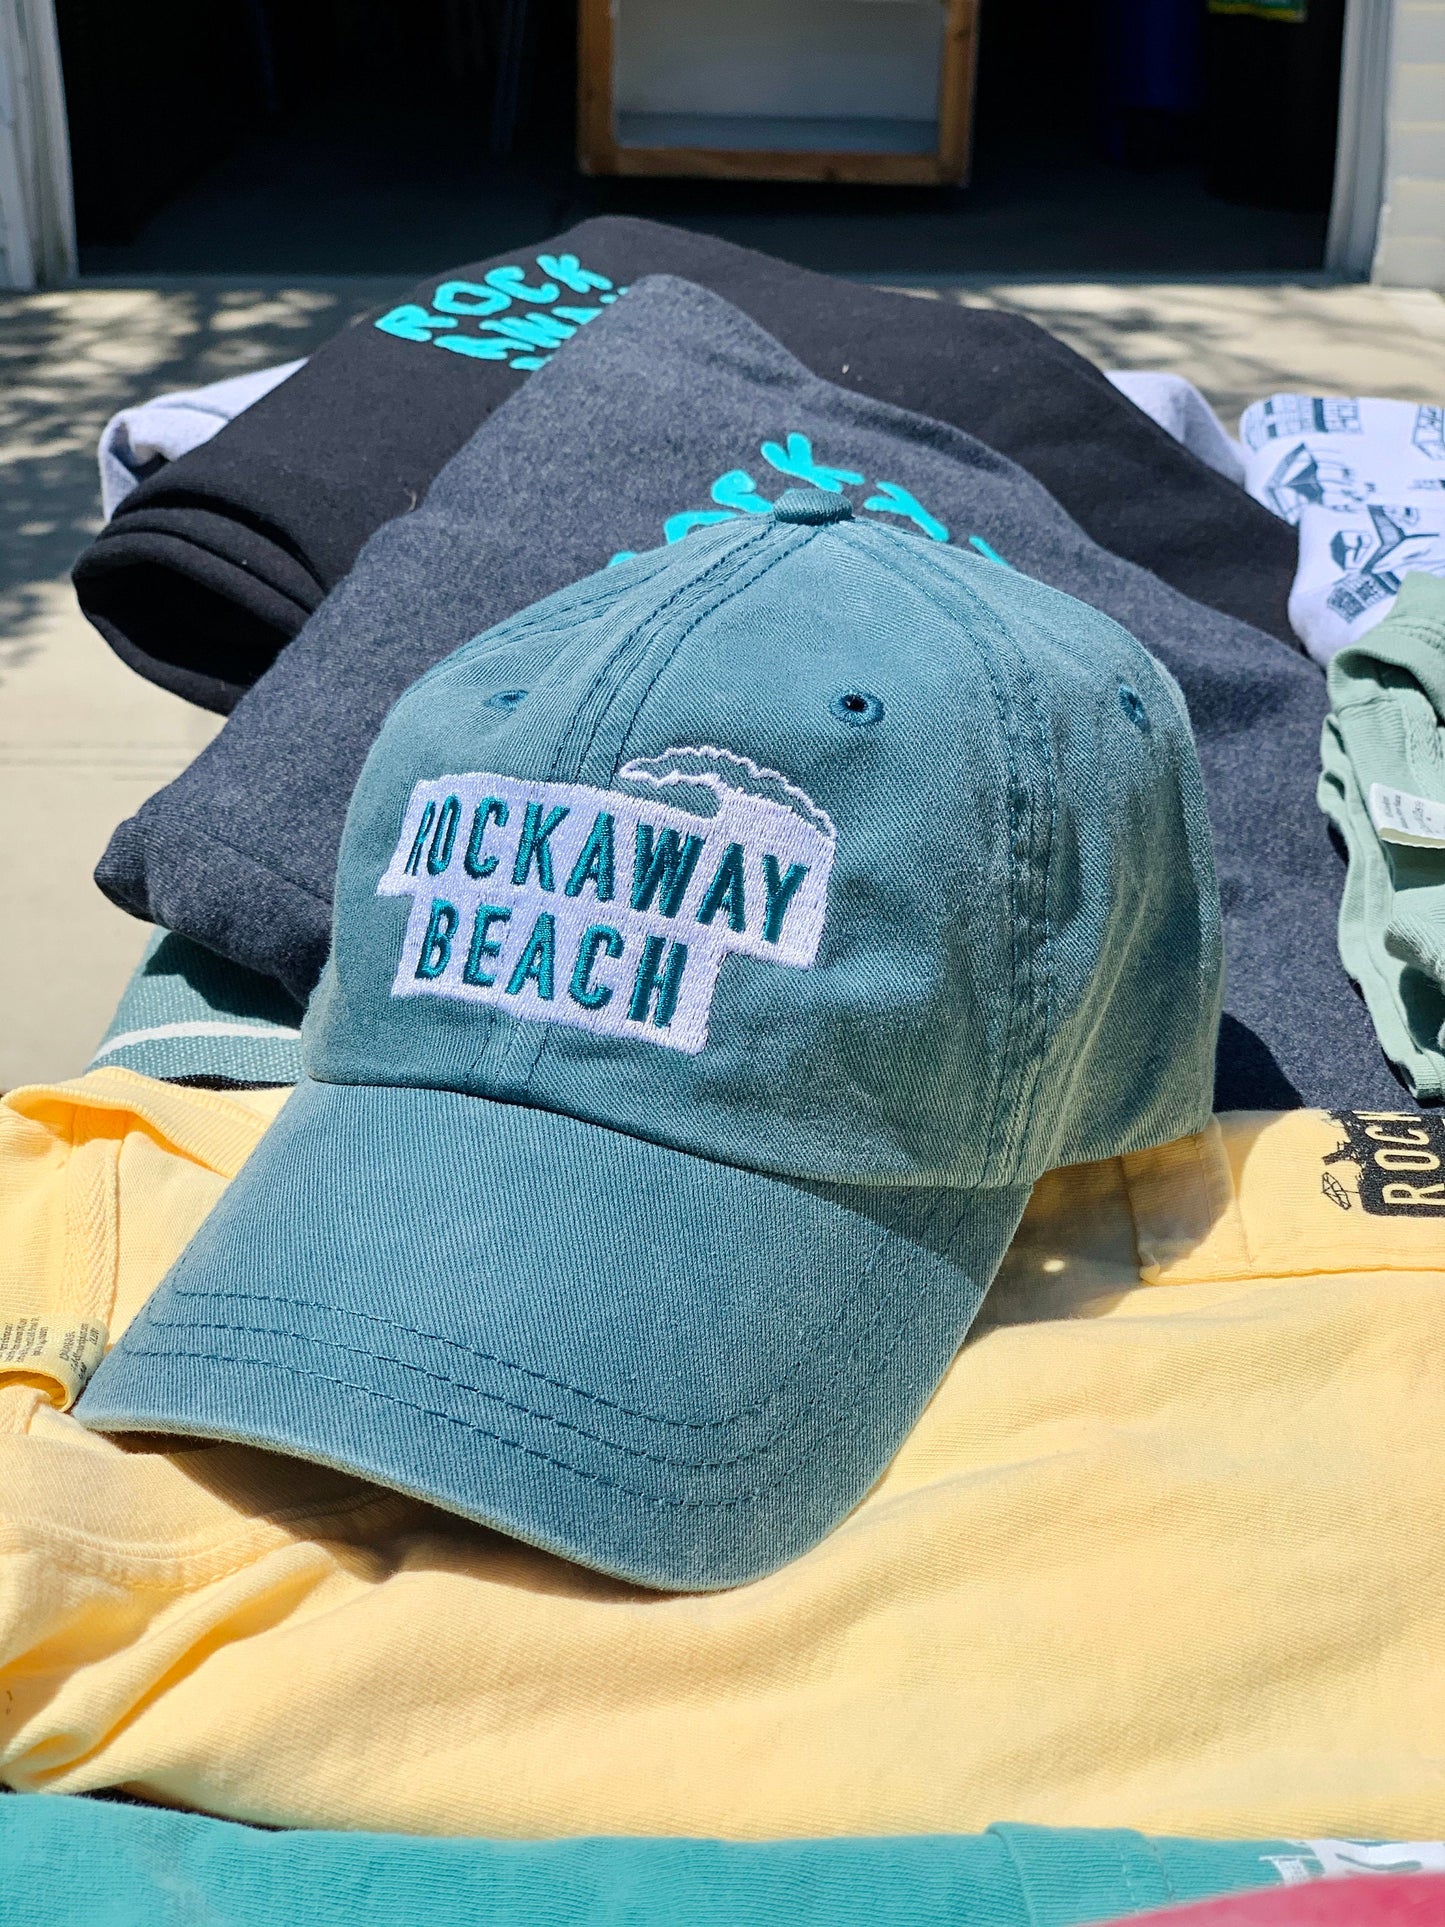 Rockaway Beach Embroidered Hat